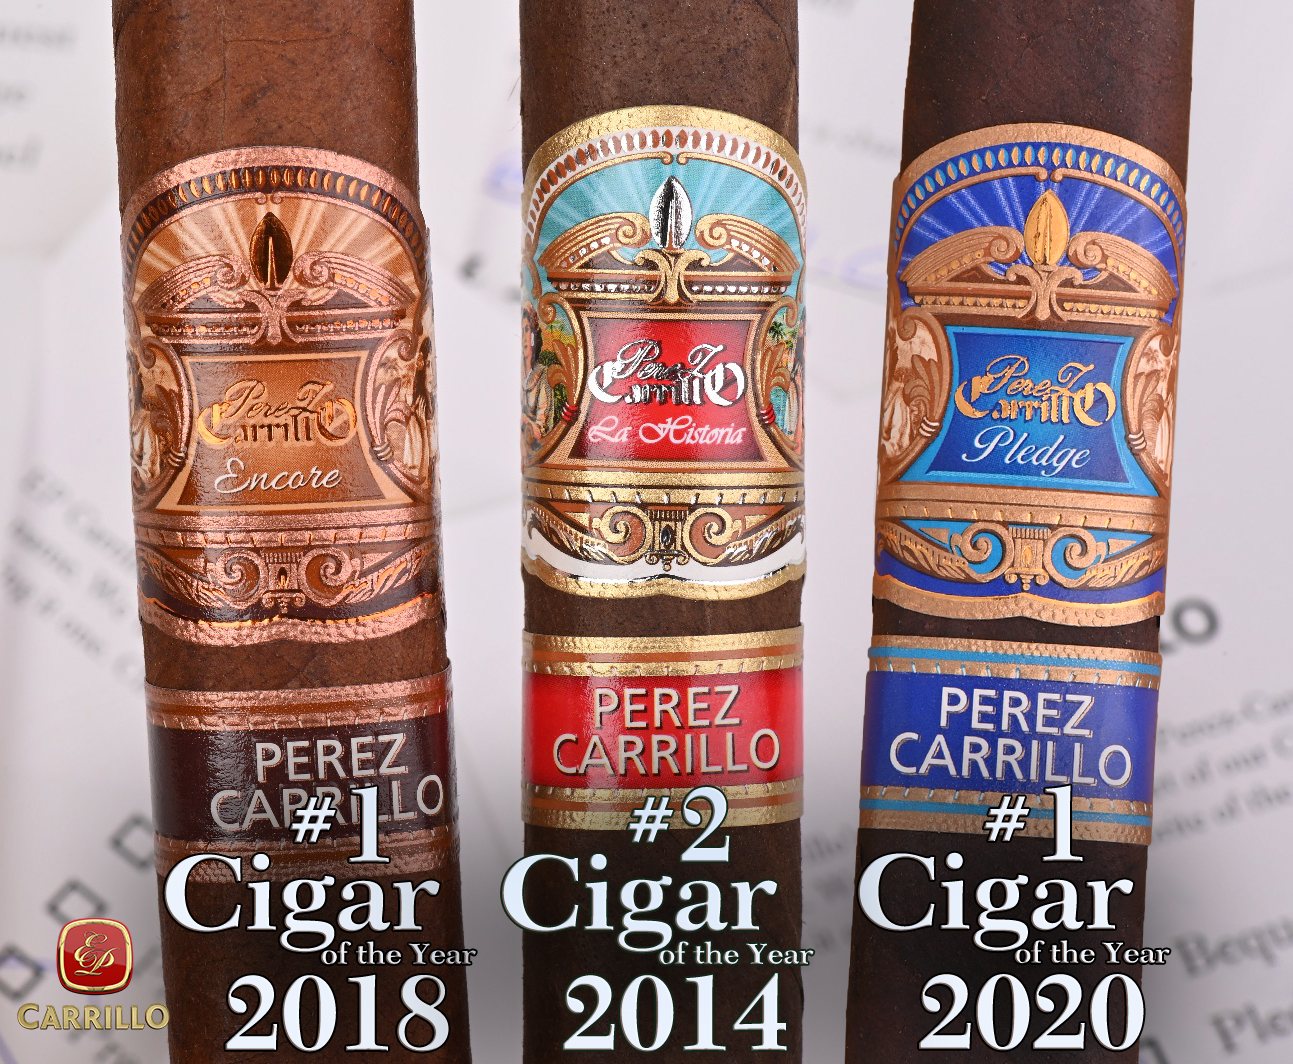 Cigar Aficionado’s #1 Cigar of the Year Pledge Prequel